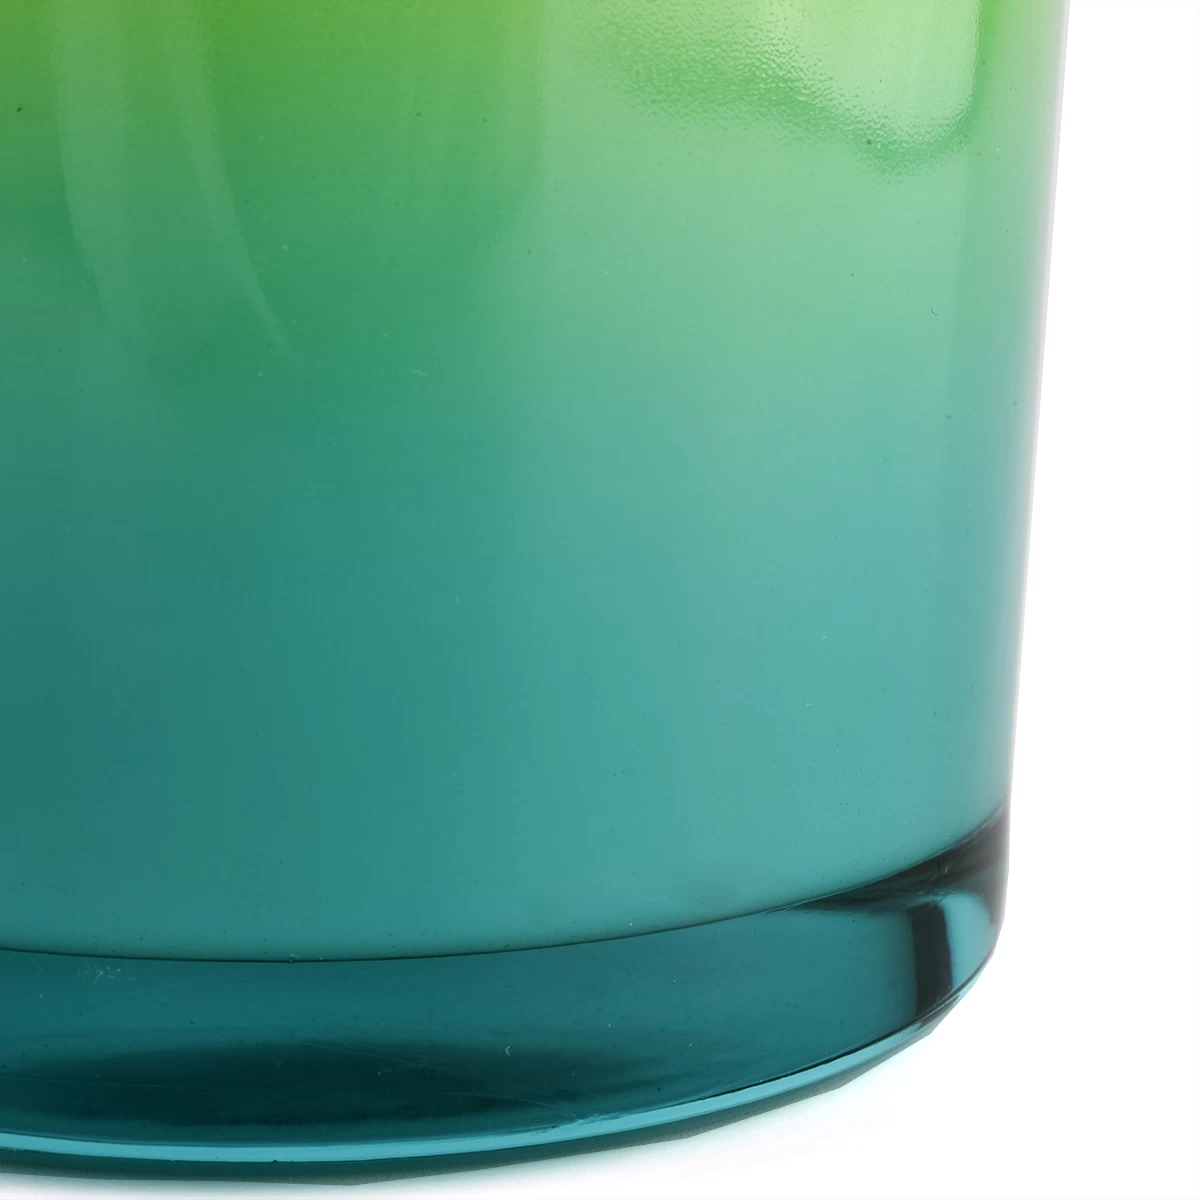 gradient color glass candle jars 12oz